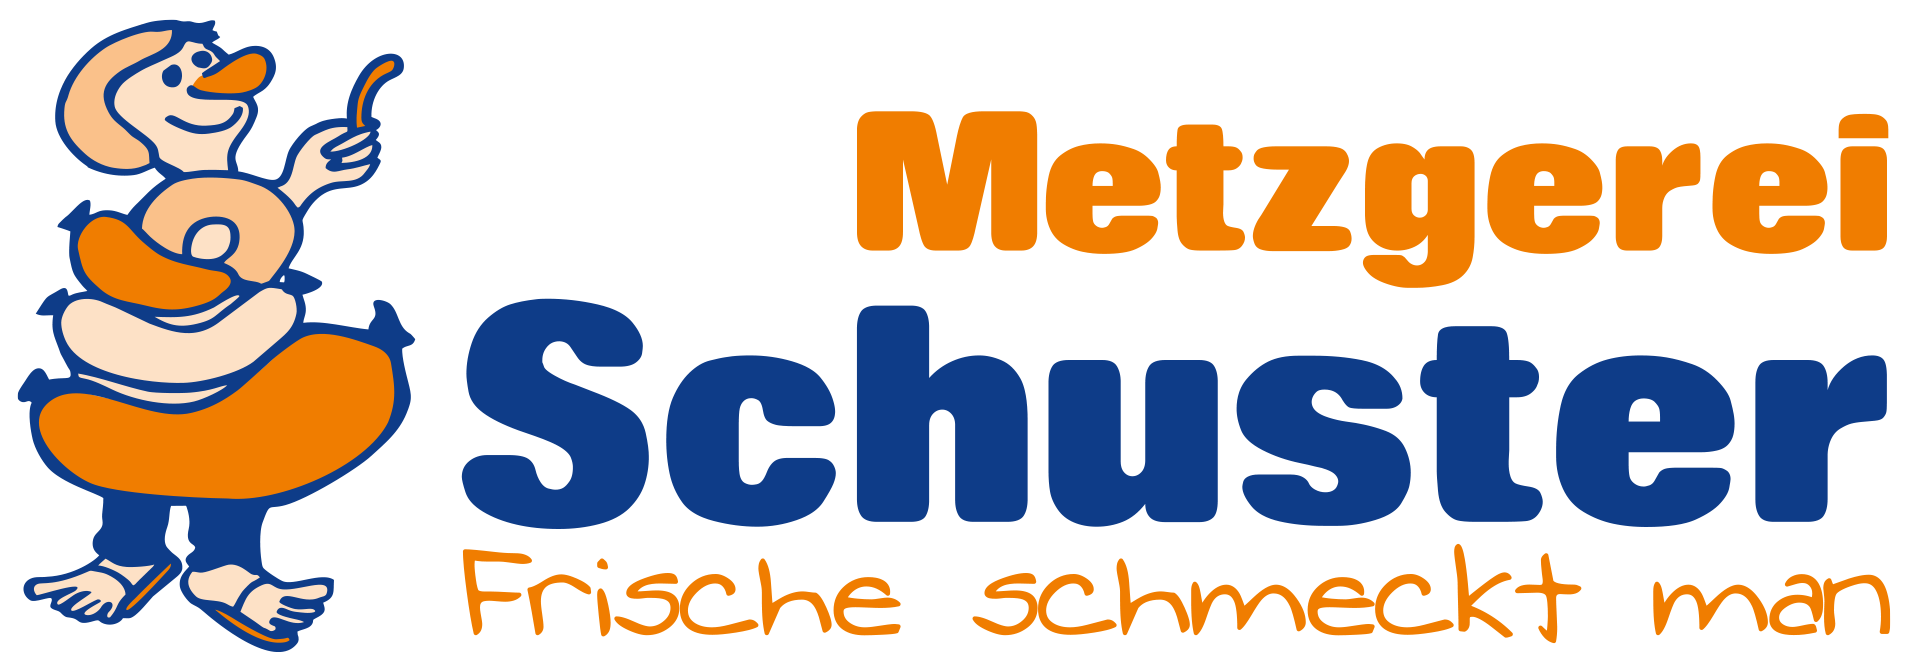 (c) Metzgerei-schuster.de